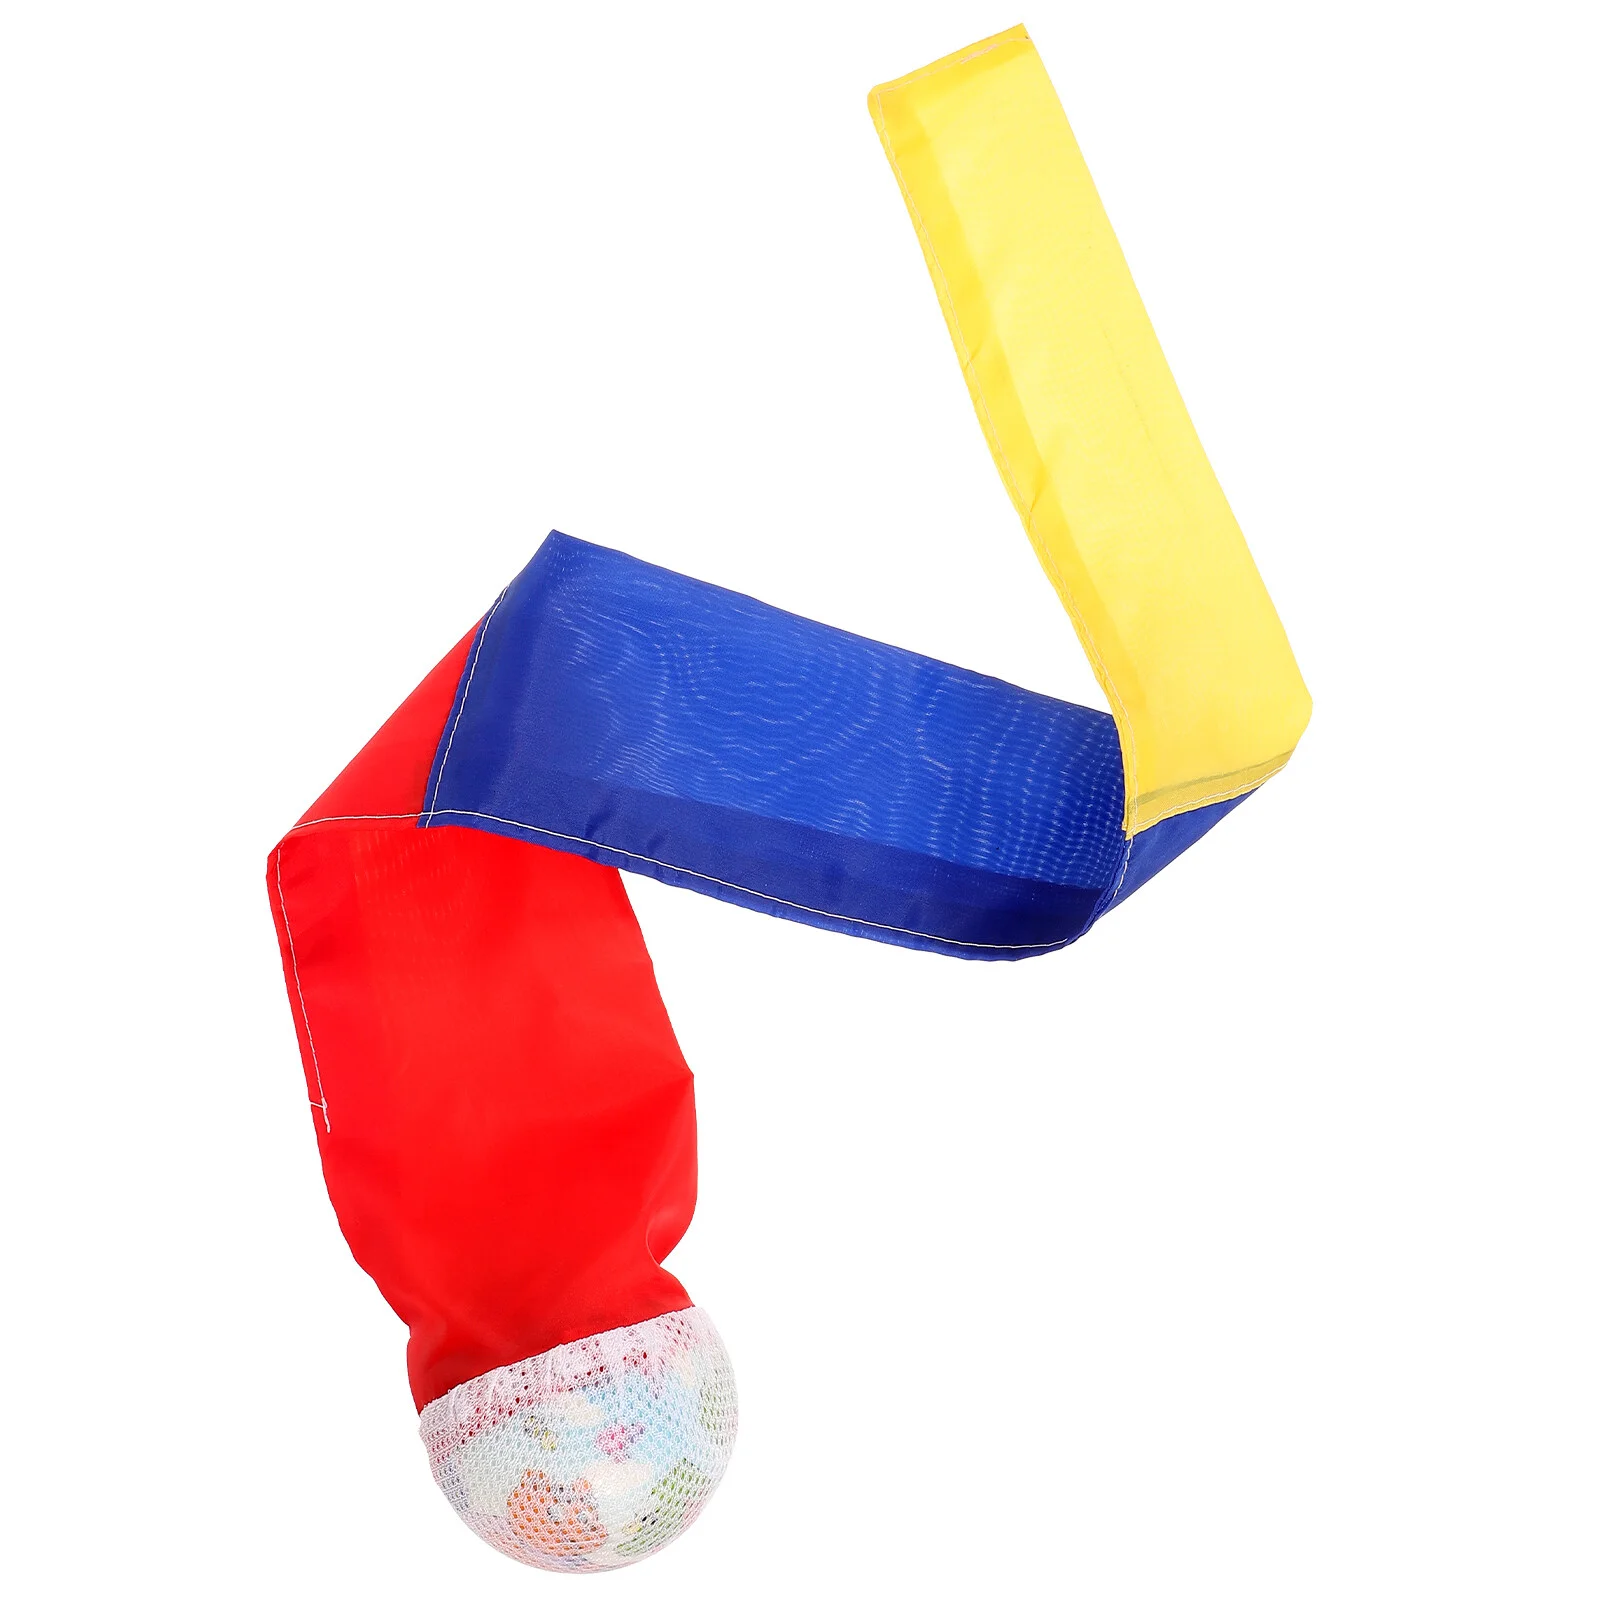 

Подарочный пенопластовый шар, хвост, игрушка-поплавок, мягкие губчатые шарики, игры для игр на открытом воздухе, детские игрушки